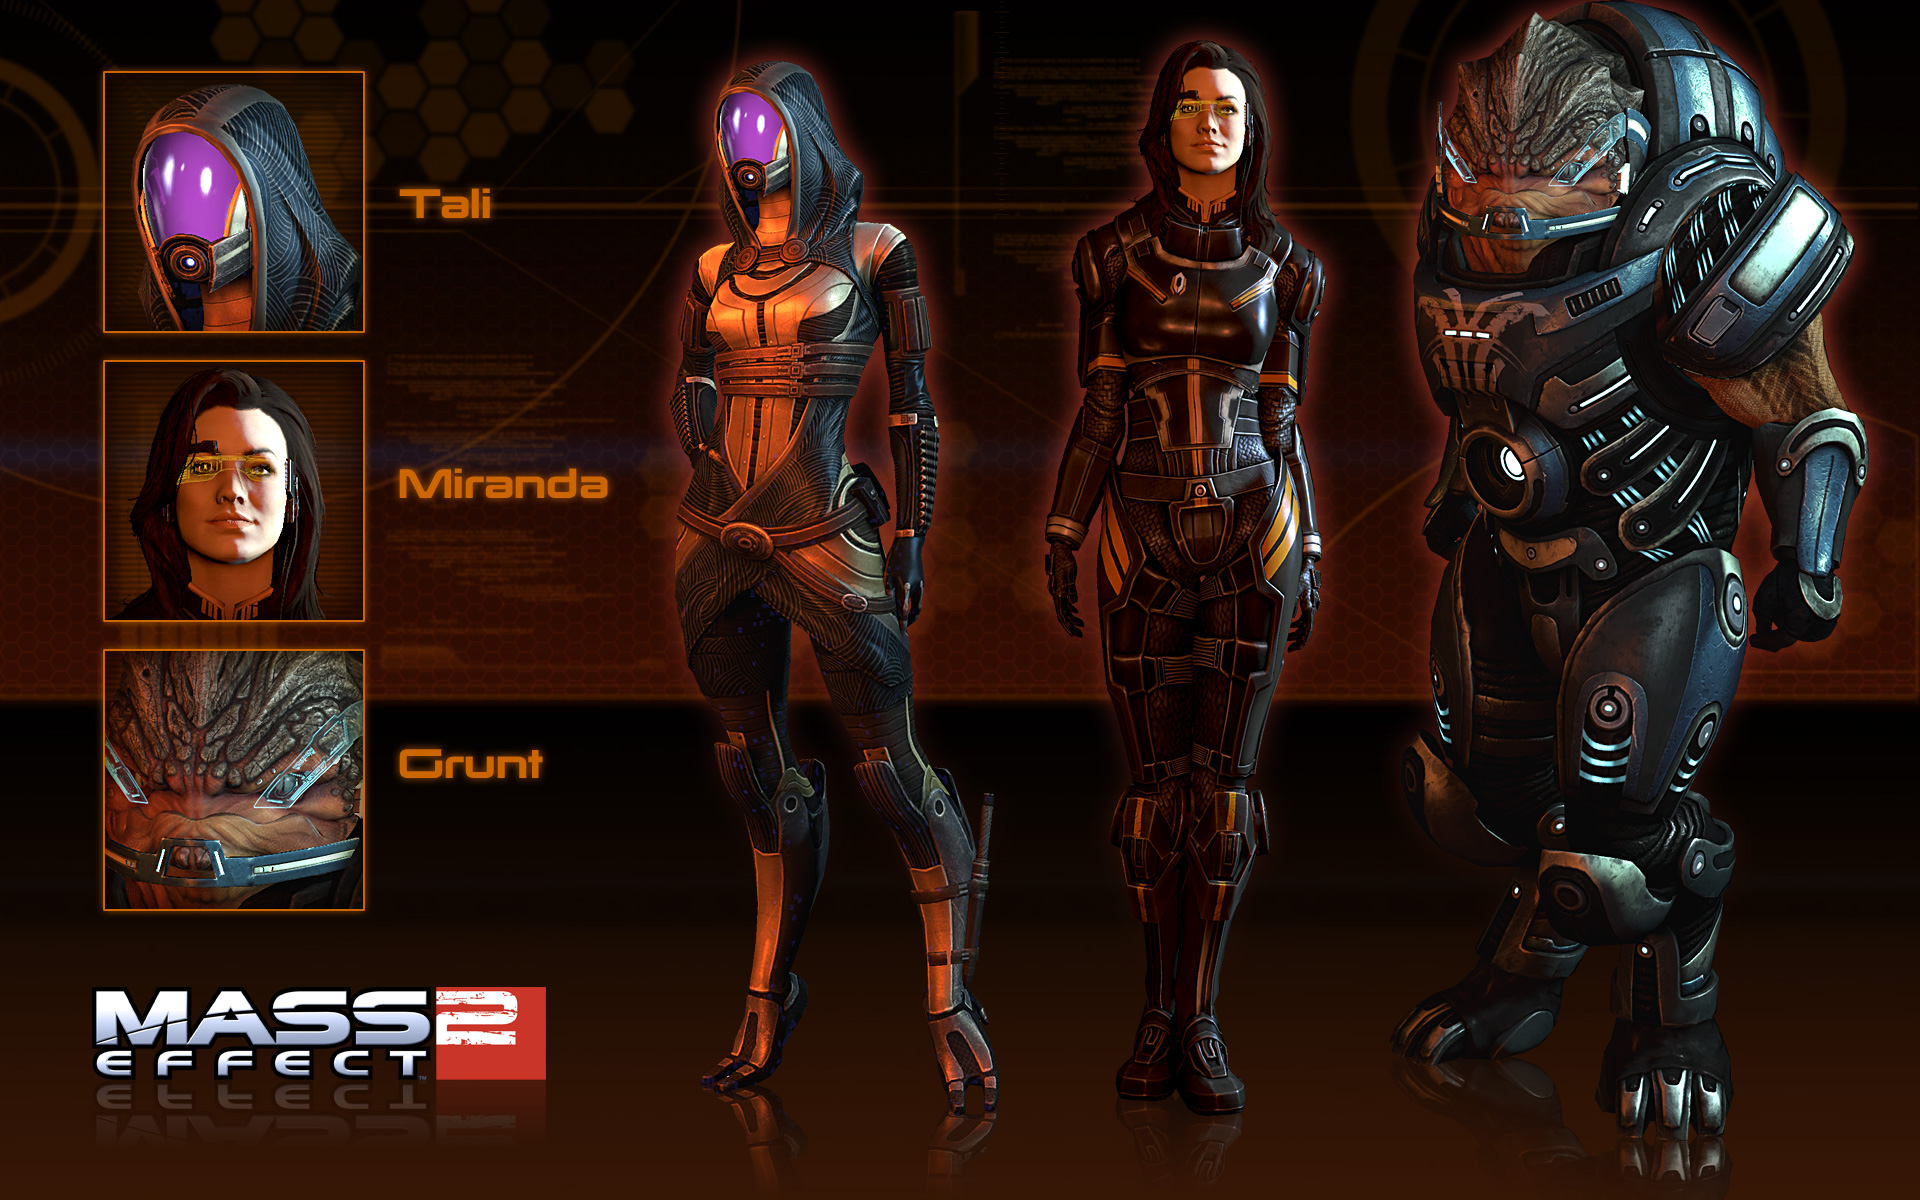 Mass Effect 2 HD wallpapers, Desktop wallpaper - most viewed